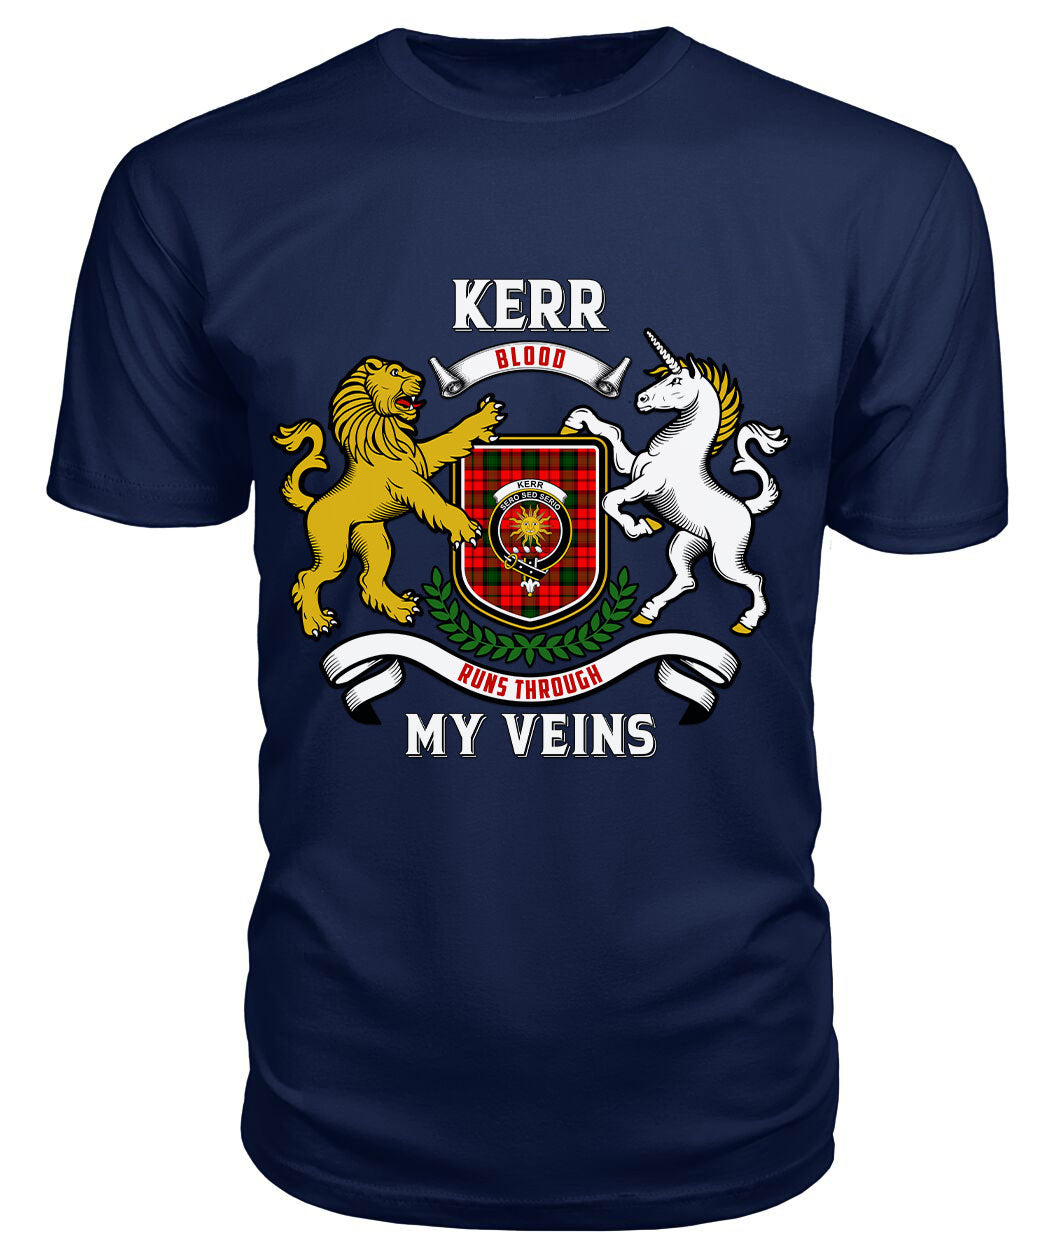 Kerr Modern Tartan Crest 2D T-shirt - Blood Runs Through My Veins Style